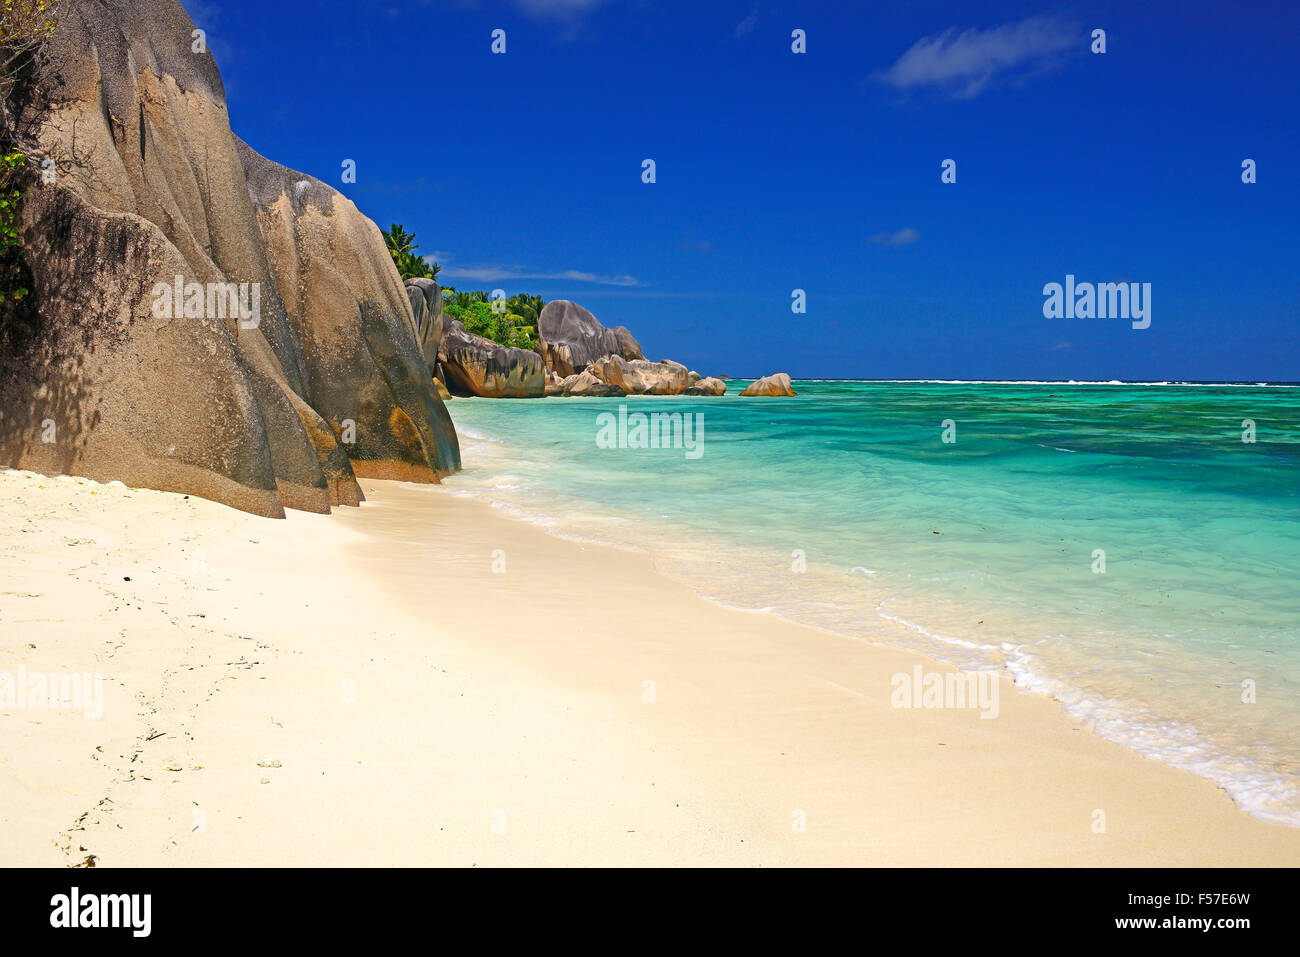 Plage d'Anse Source d'argent, rochers de granit, plage de rêve, l'île de La Digue, Seychelles Banque D'Images